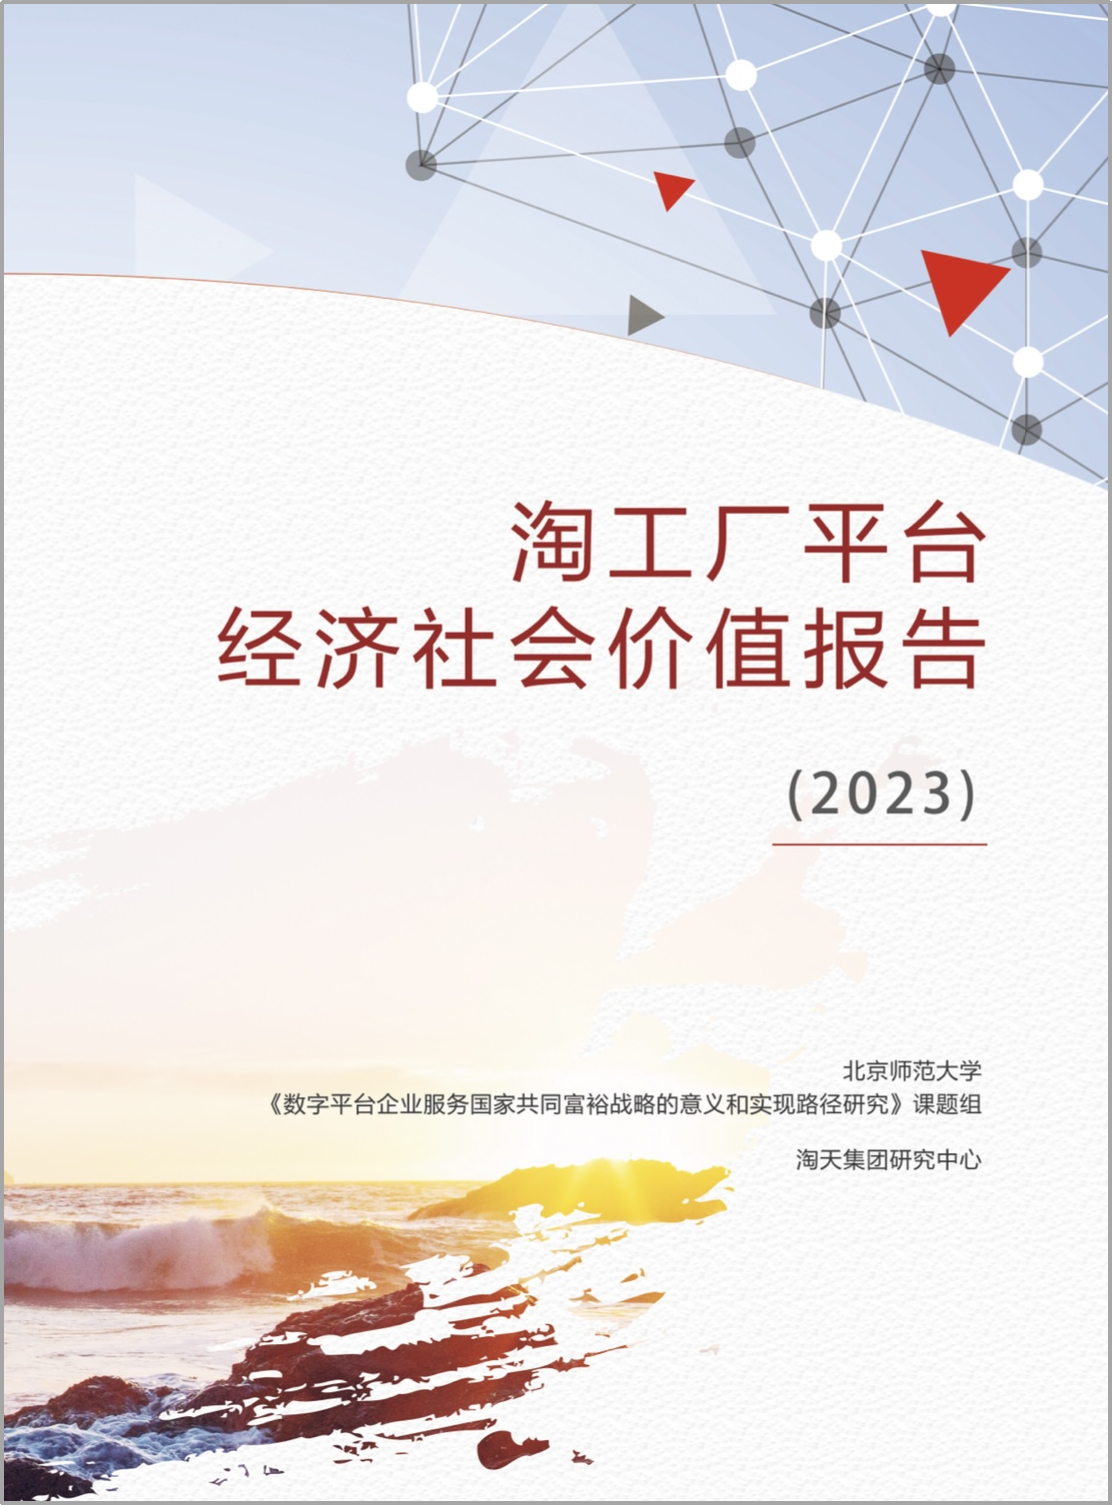 图：在北师大发布《淘工厂平台经济社会价值》研究报告。